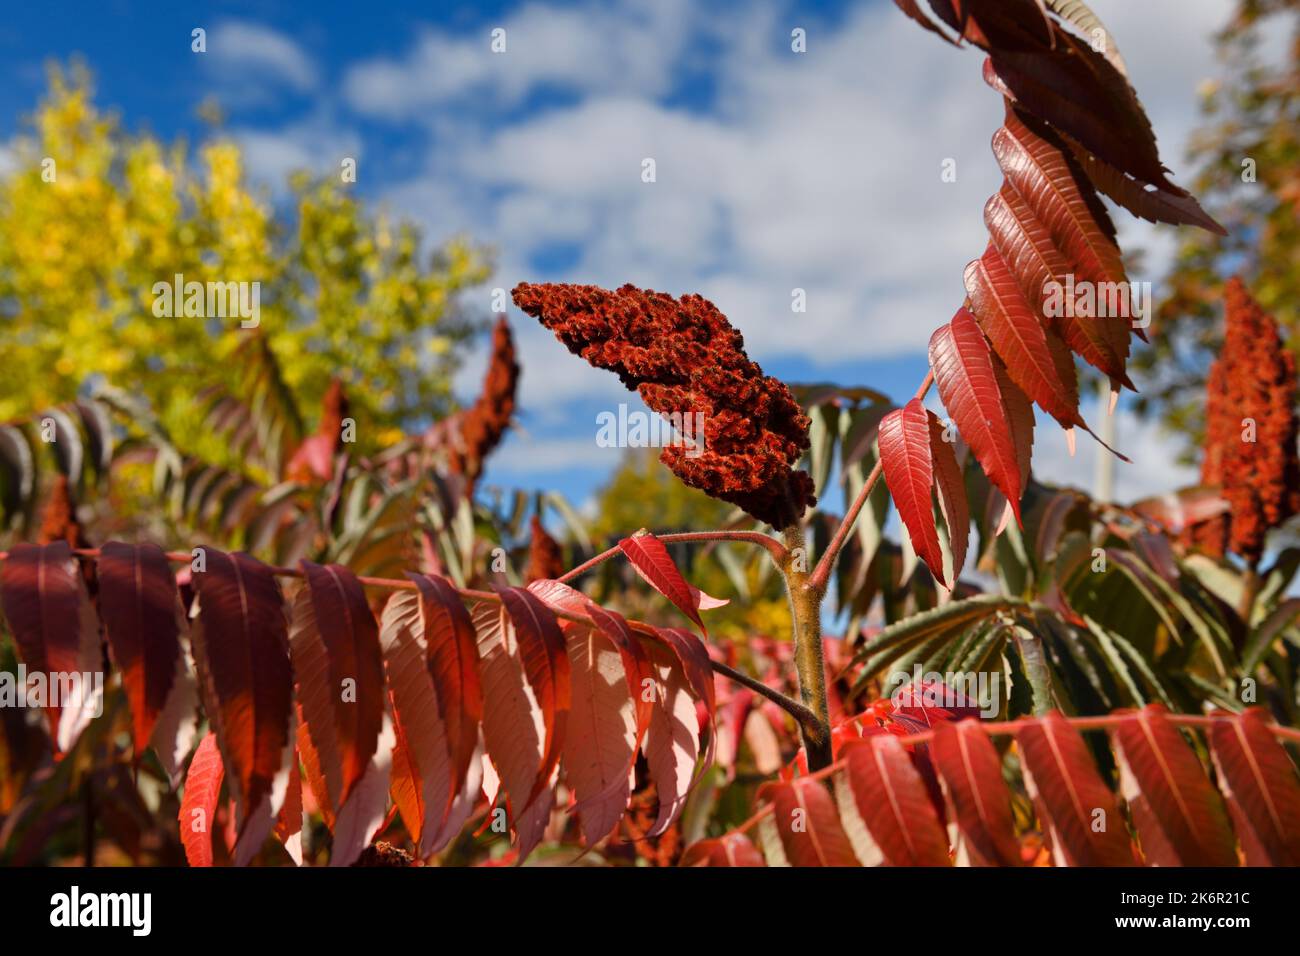 Flauschige Steinobst und rote Sumac-Blätter im Herbst bei Sonnenschein Kanada Stockfoto